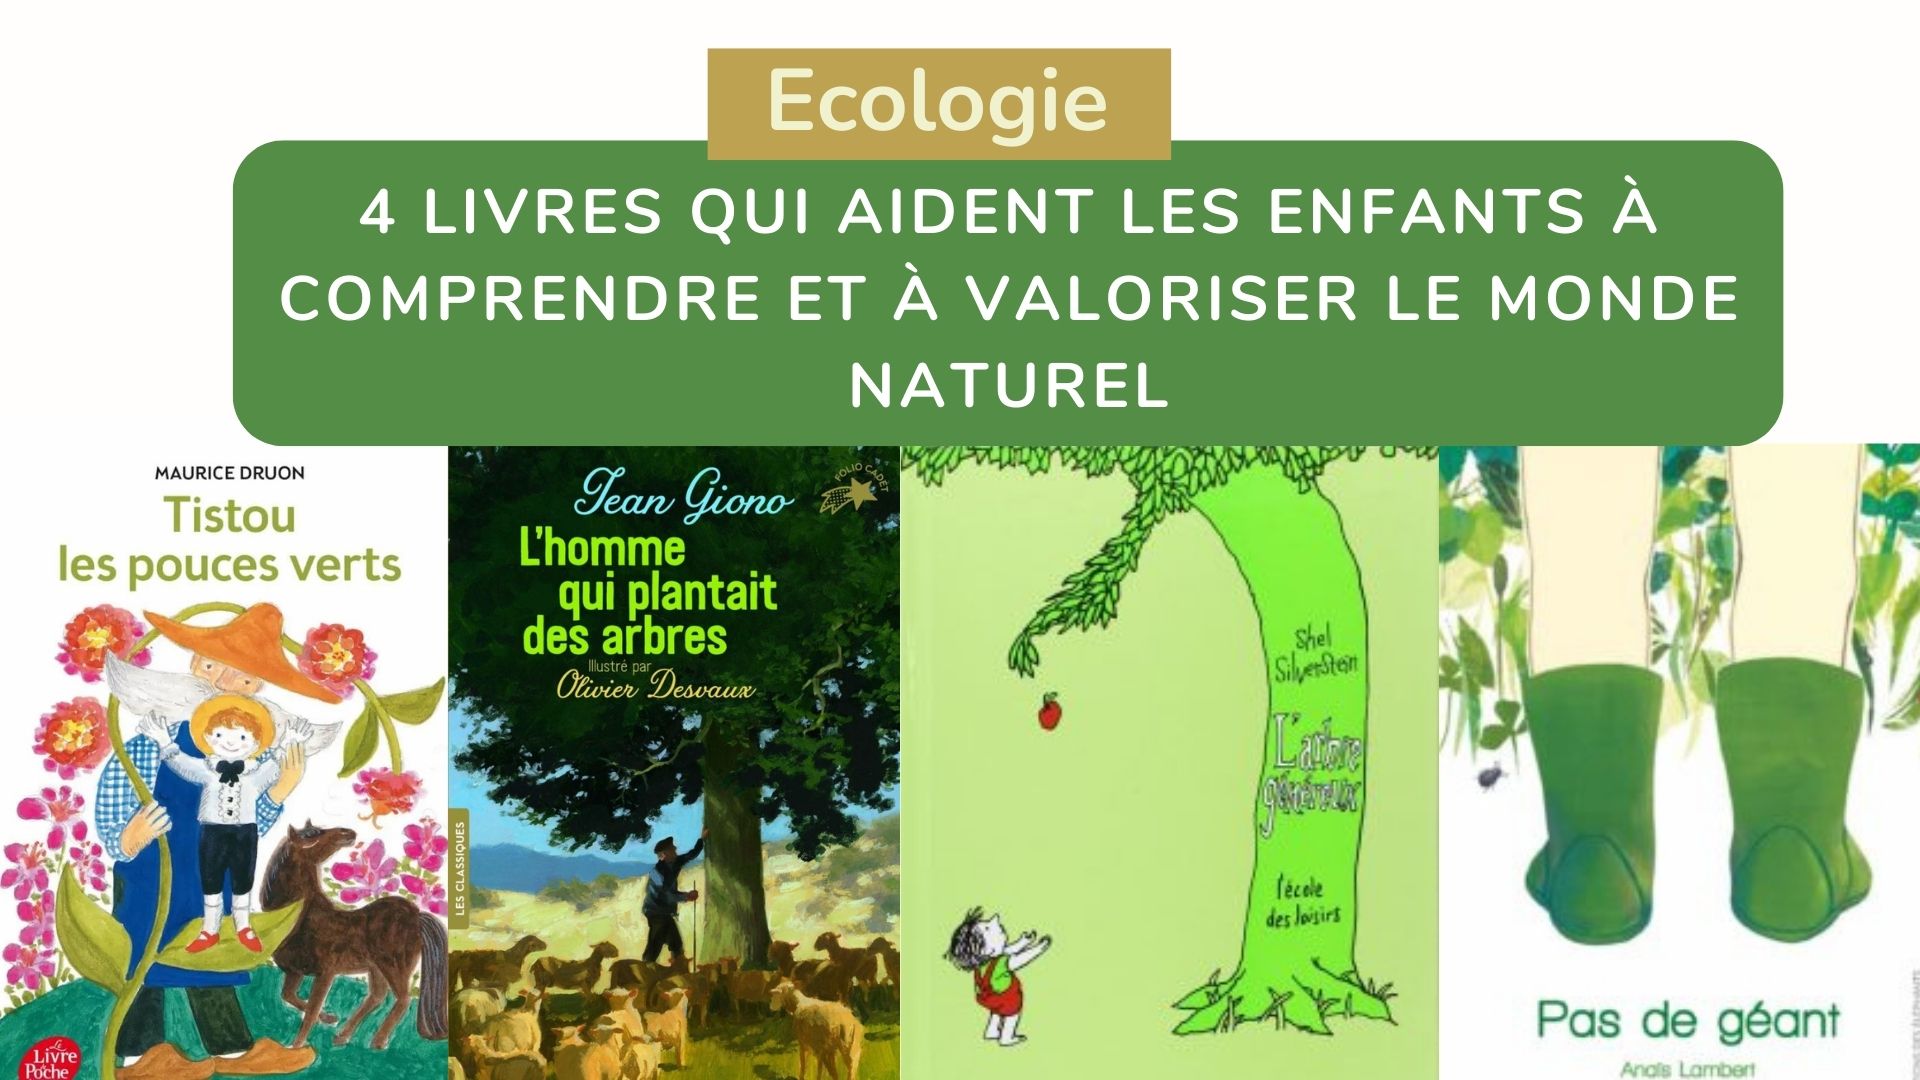 2 magnifiques livres pour les enfants sur la nature et le jardinage